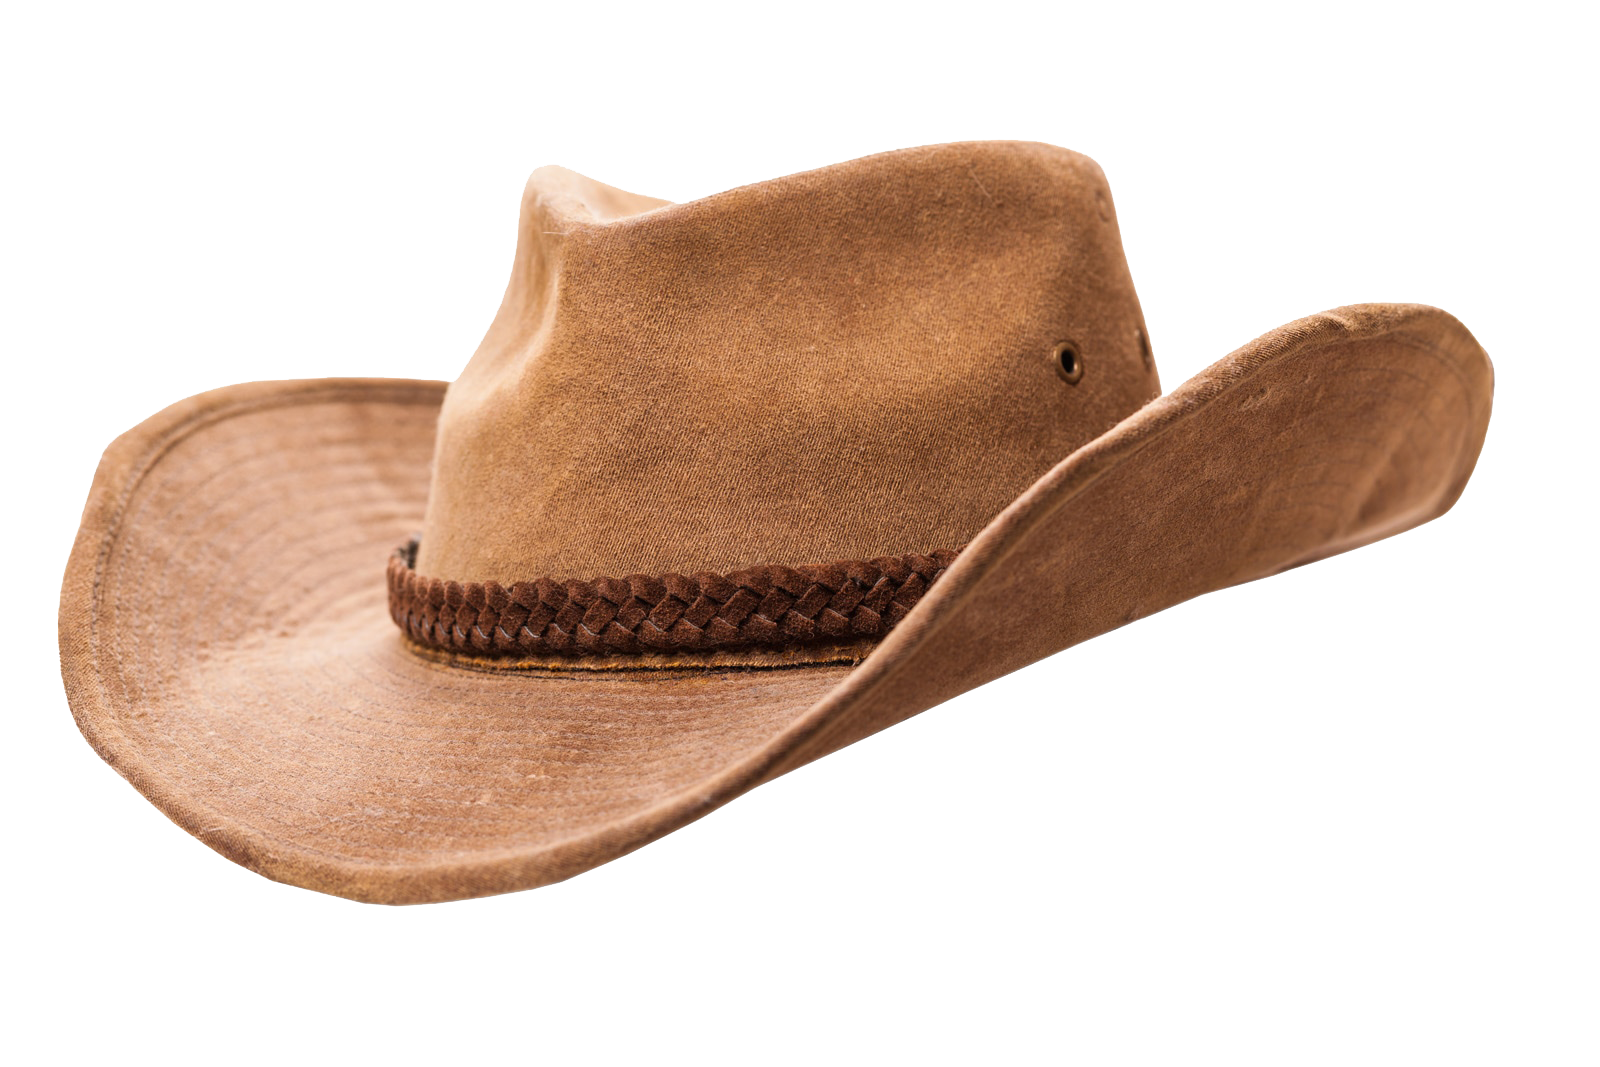 A brown suede cowboy hat